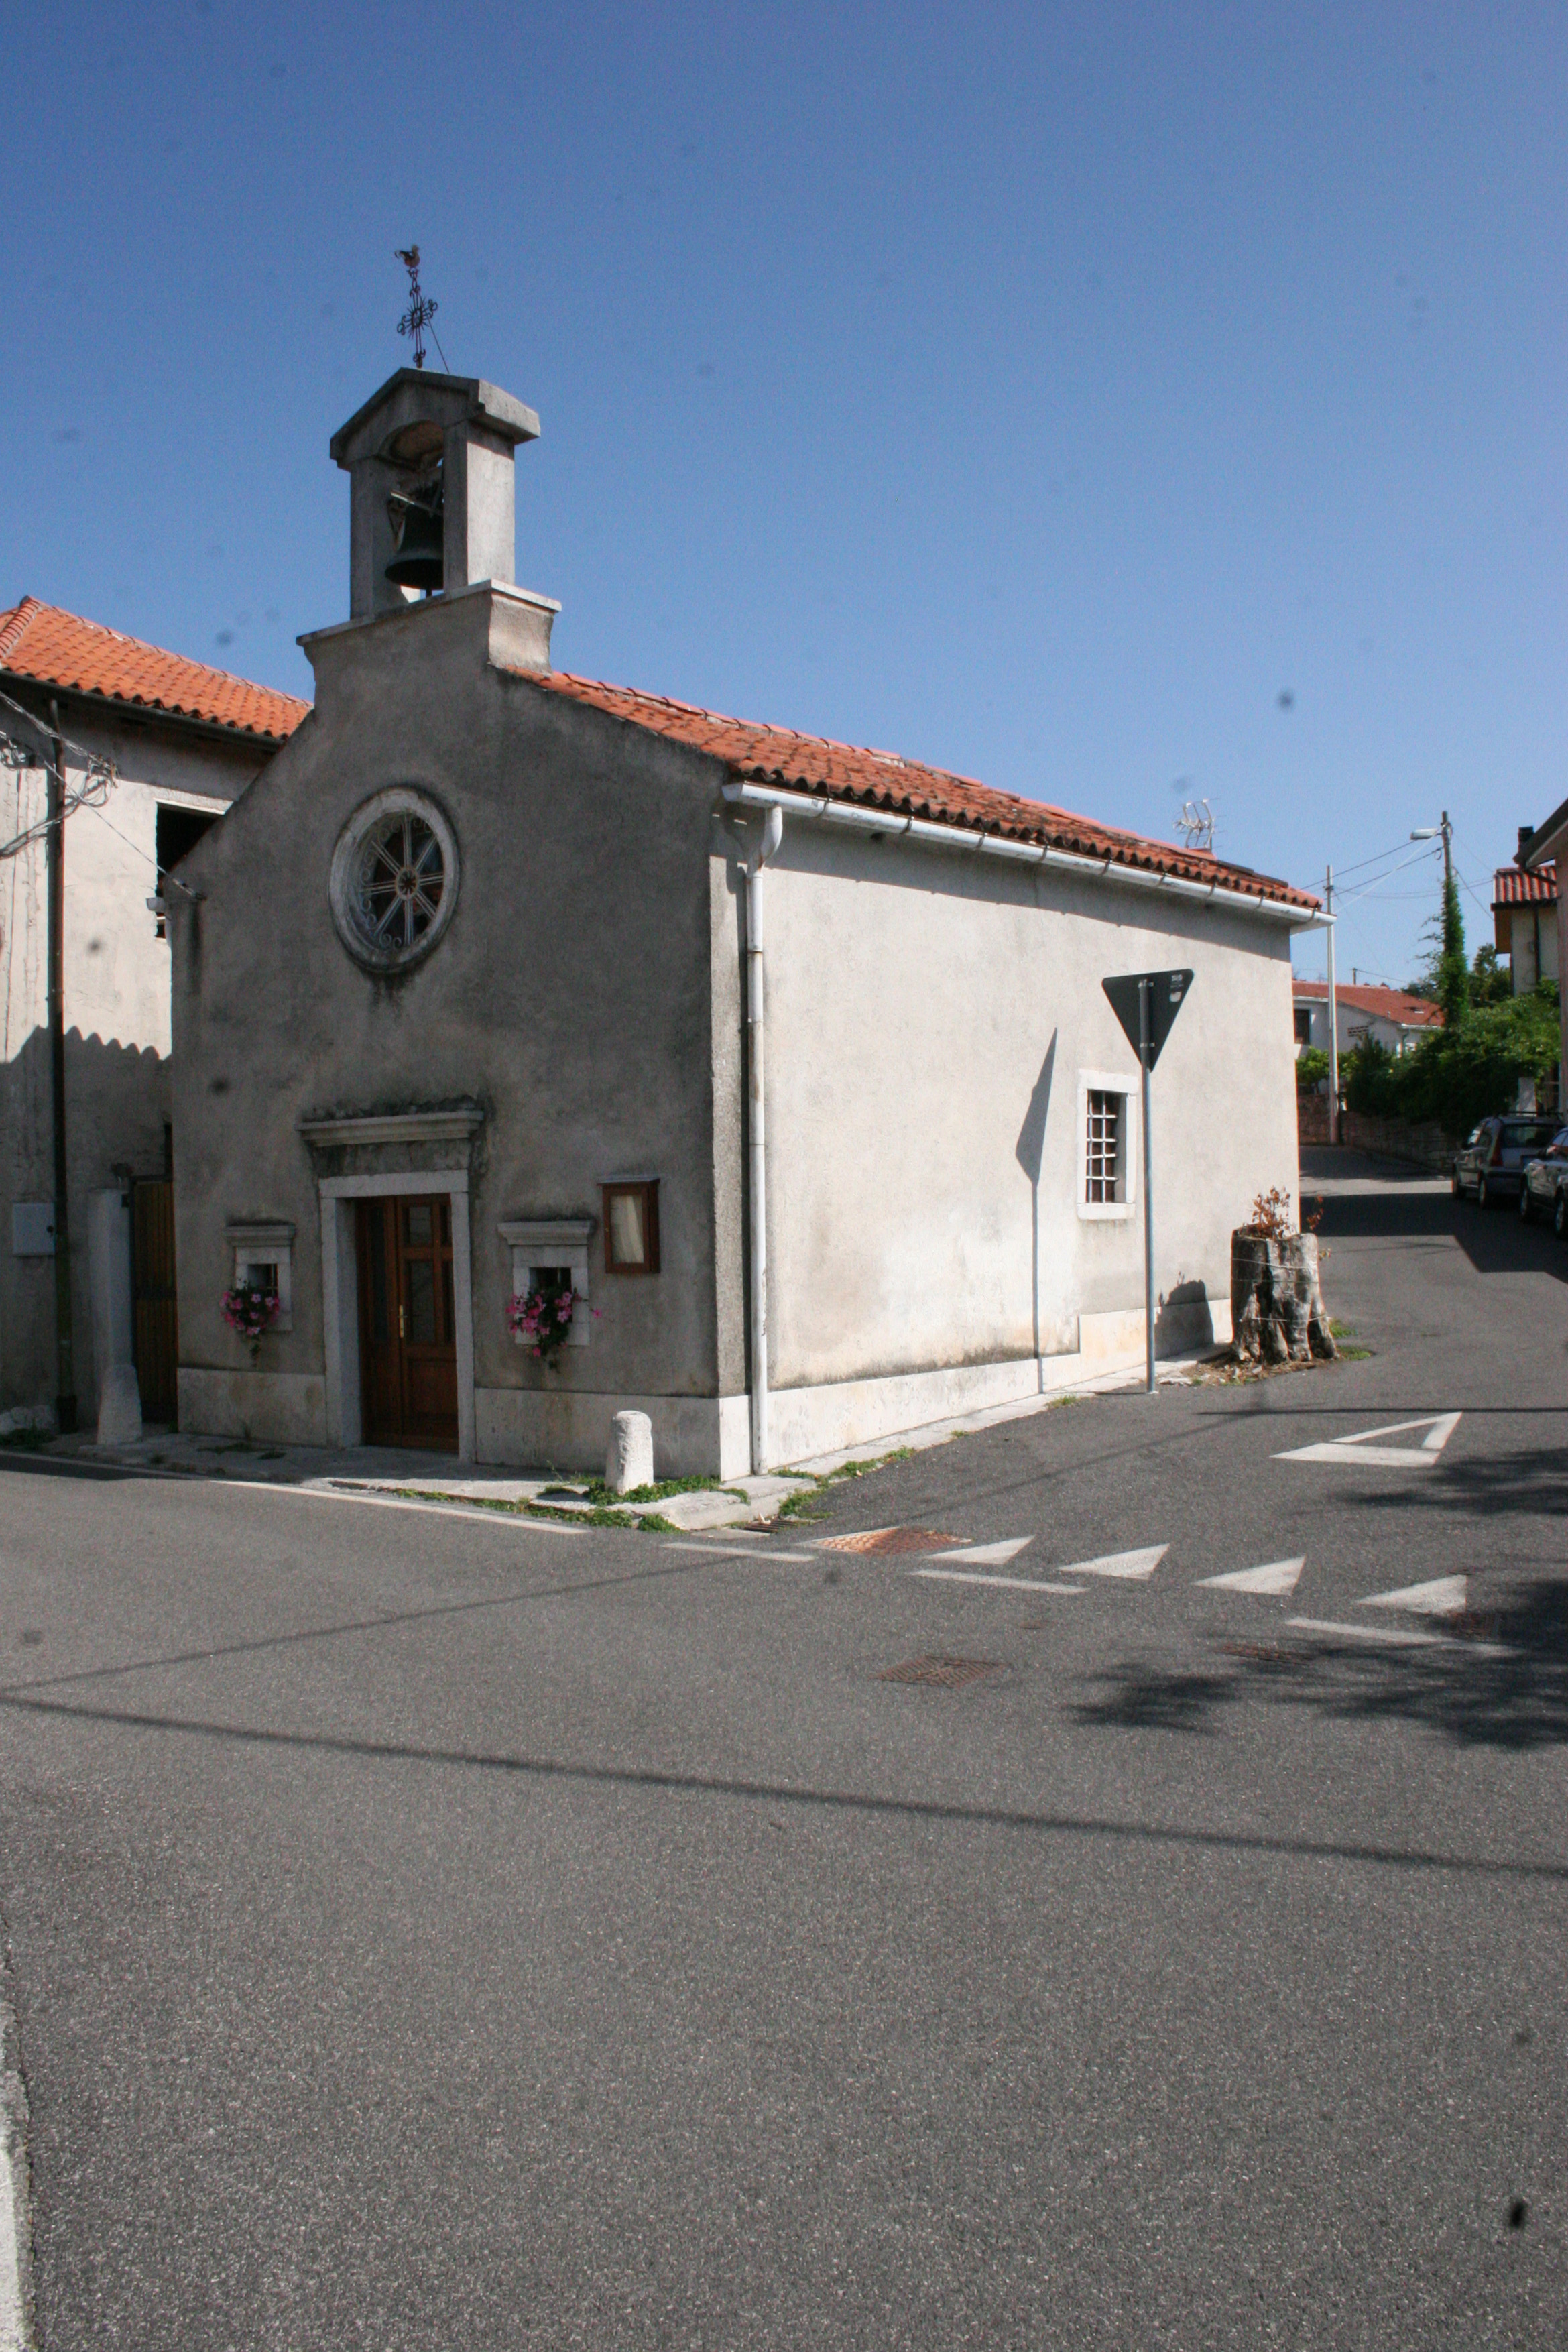 Chiesa filiale di San Rocco (chiesa, filiale) - Trieste (TS) 